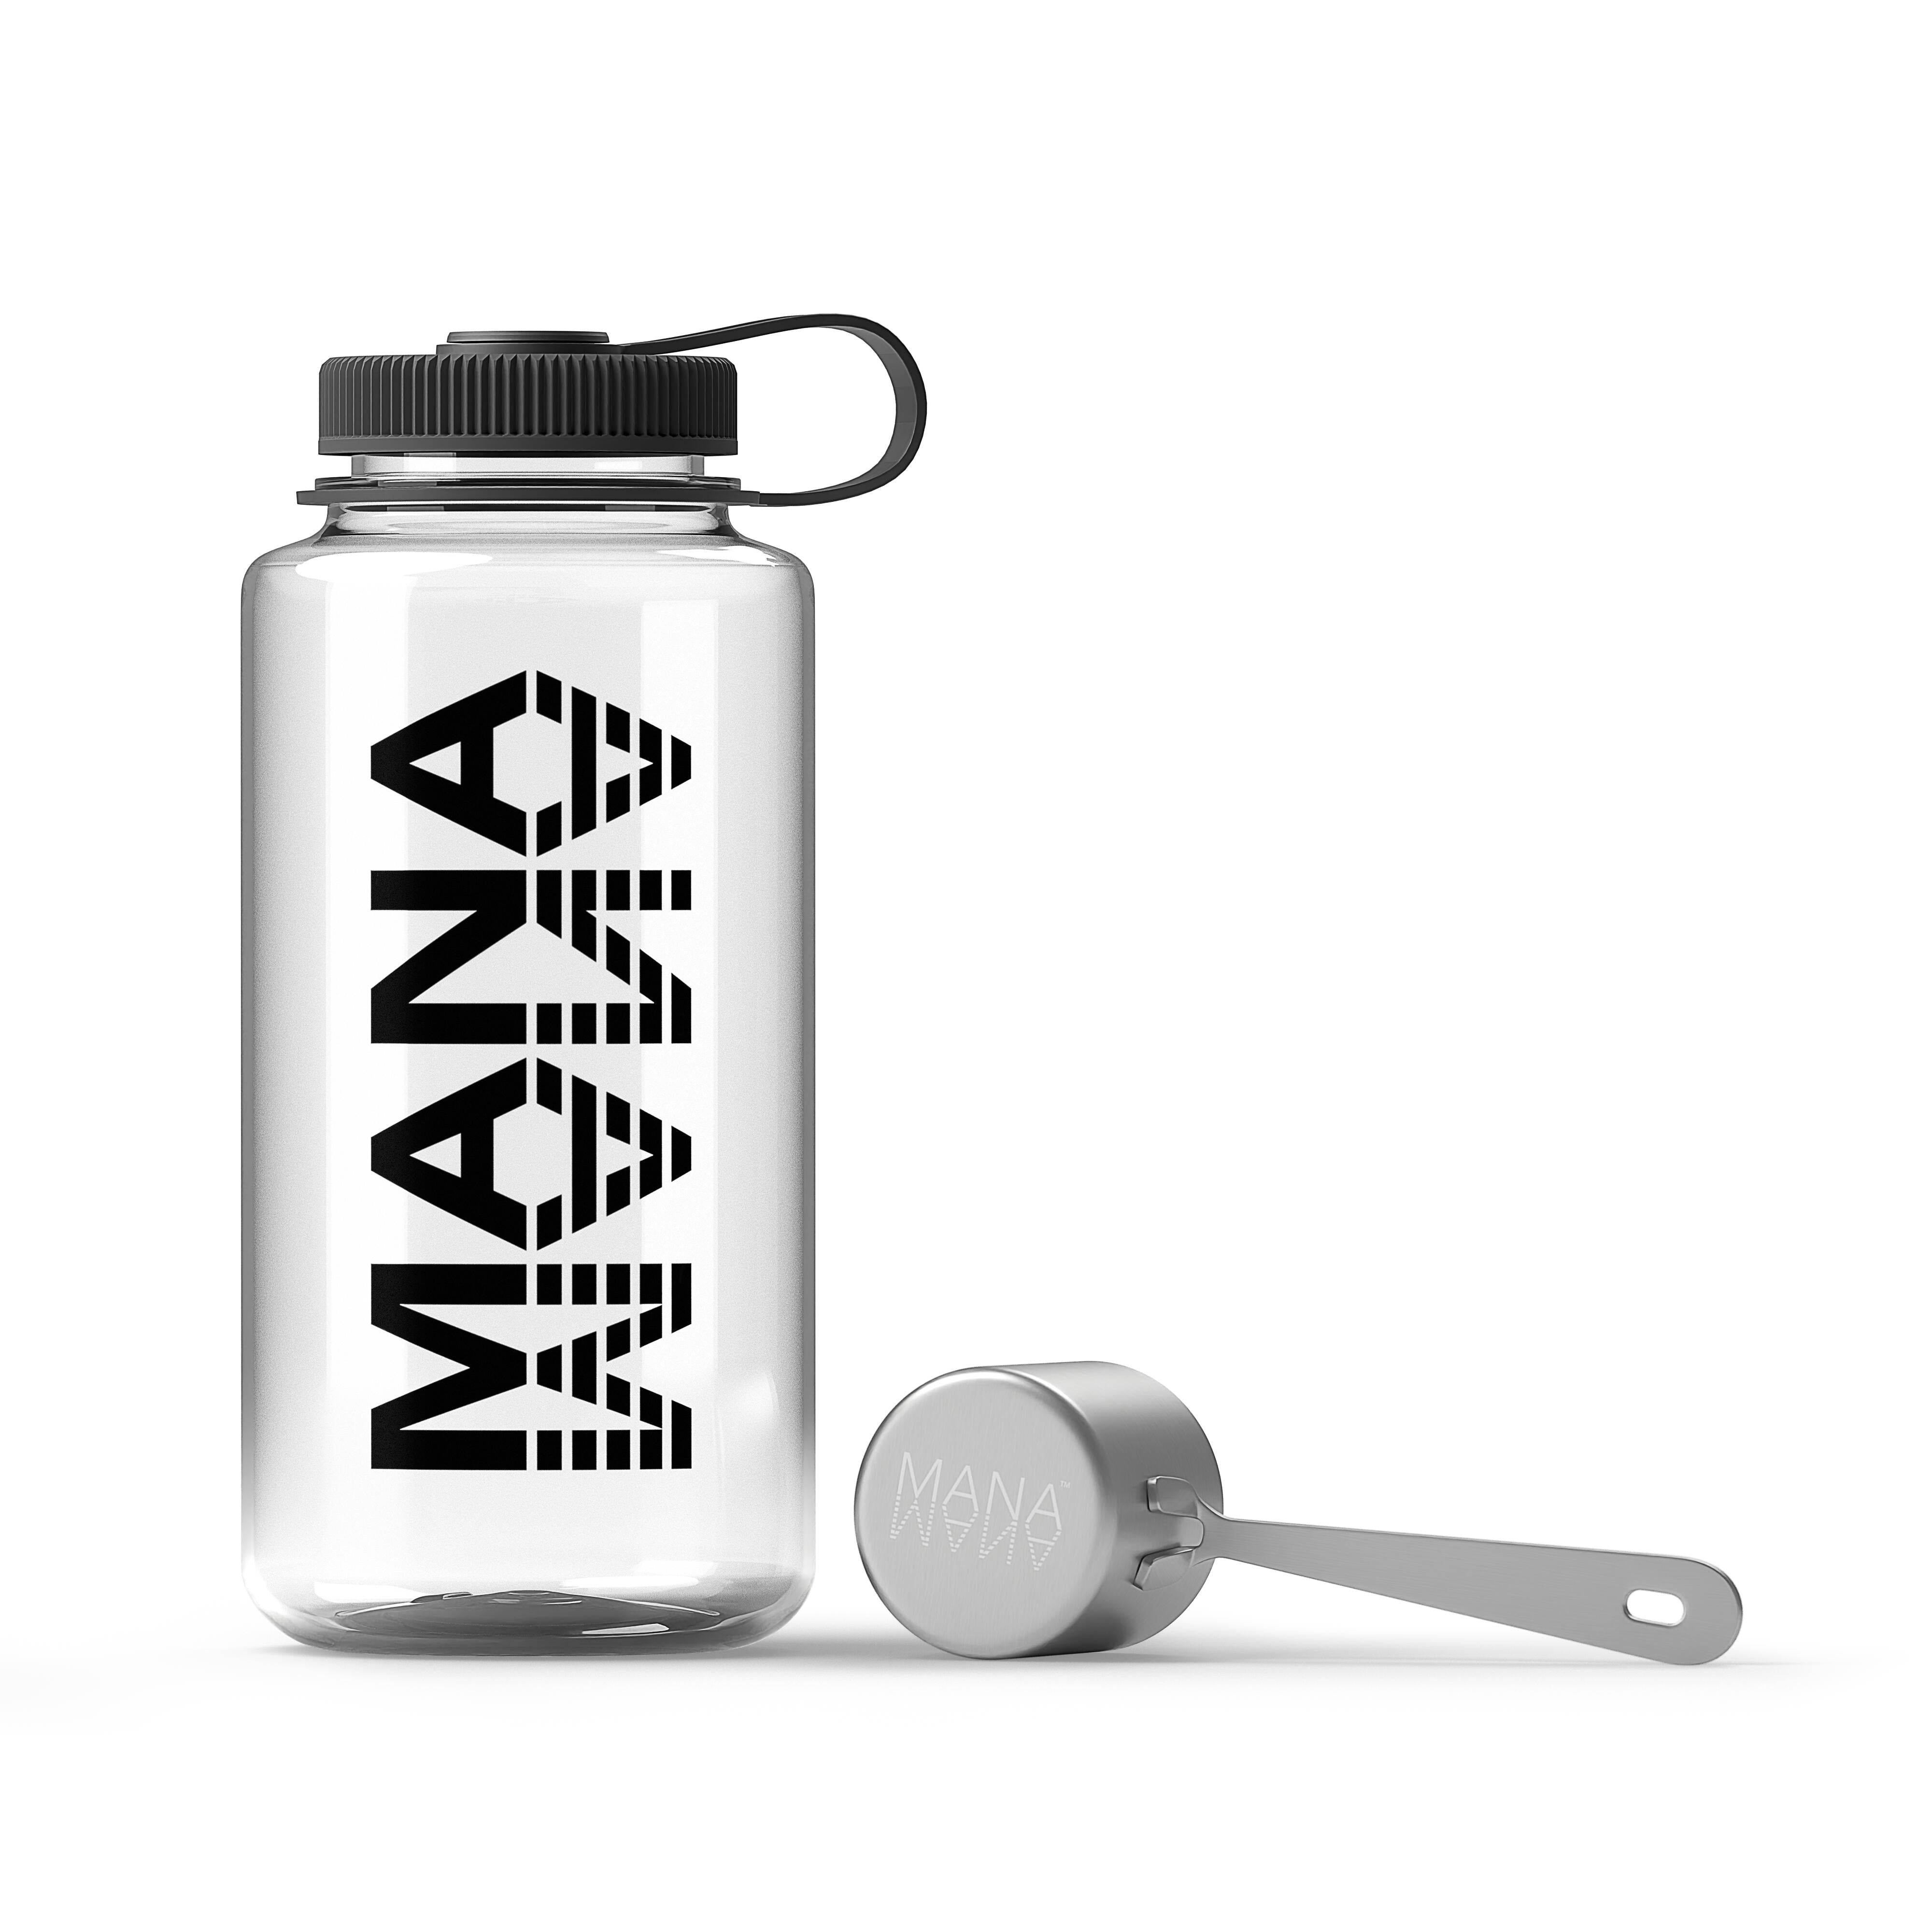 Mana - All Products – Mana™